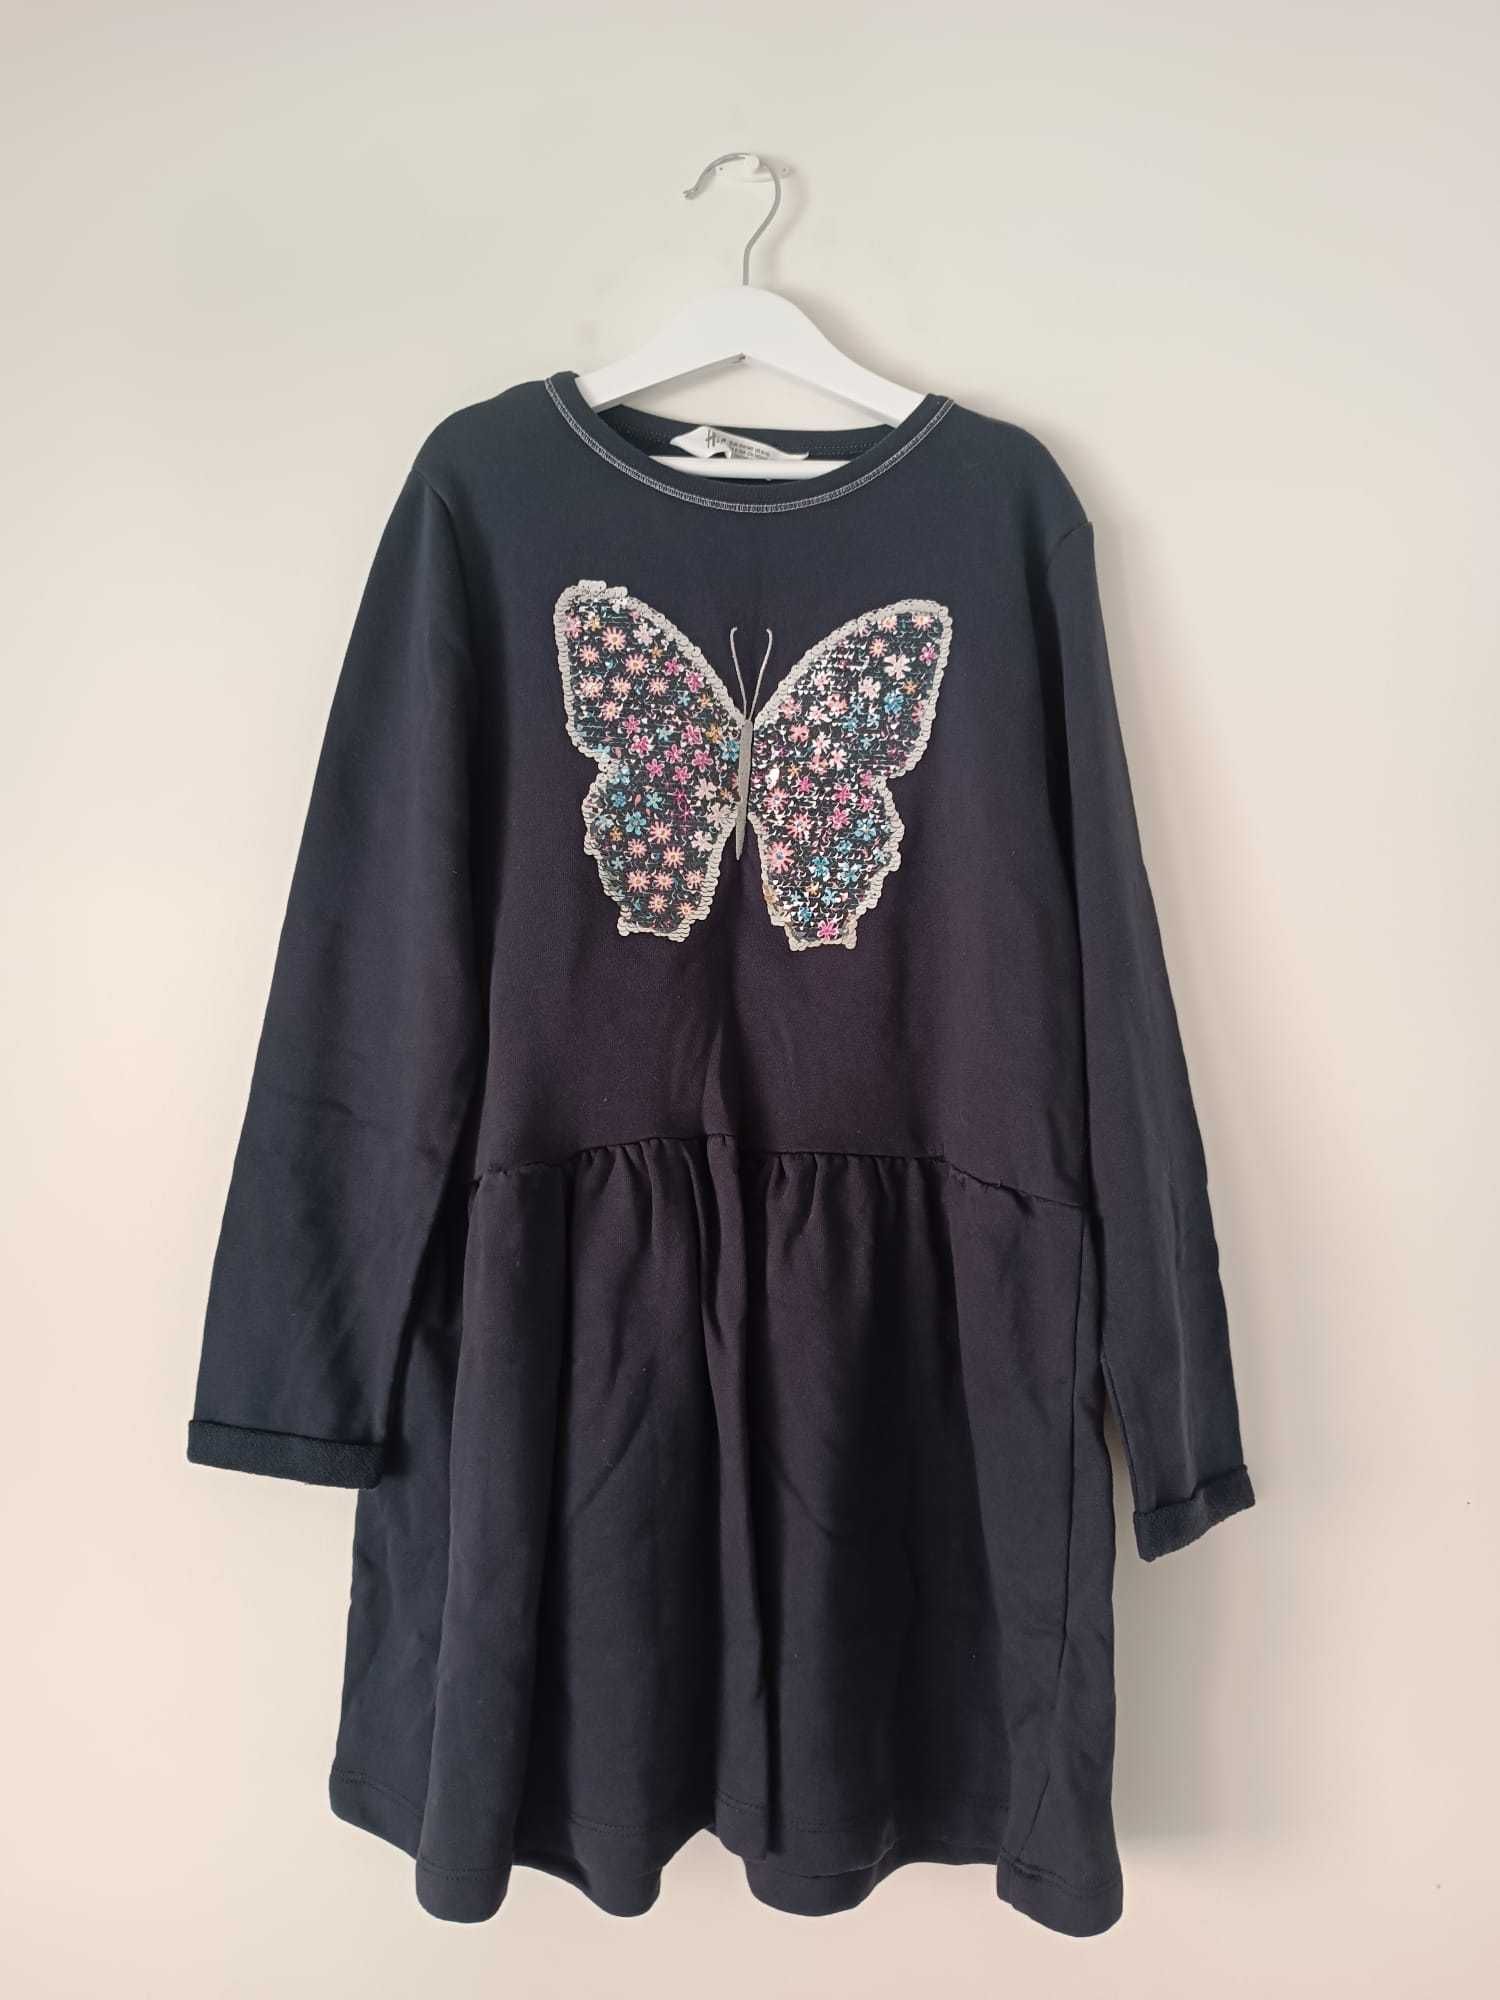 Vestido azul com uma borboleta em brilhantes (tamanho 8-10 anos, H&M)